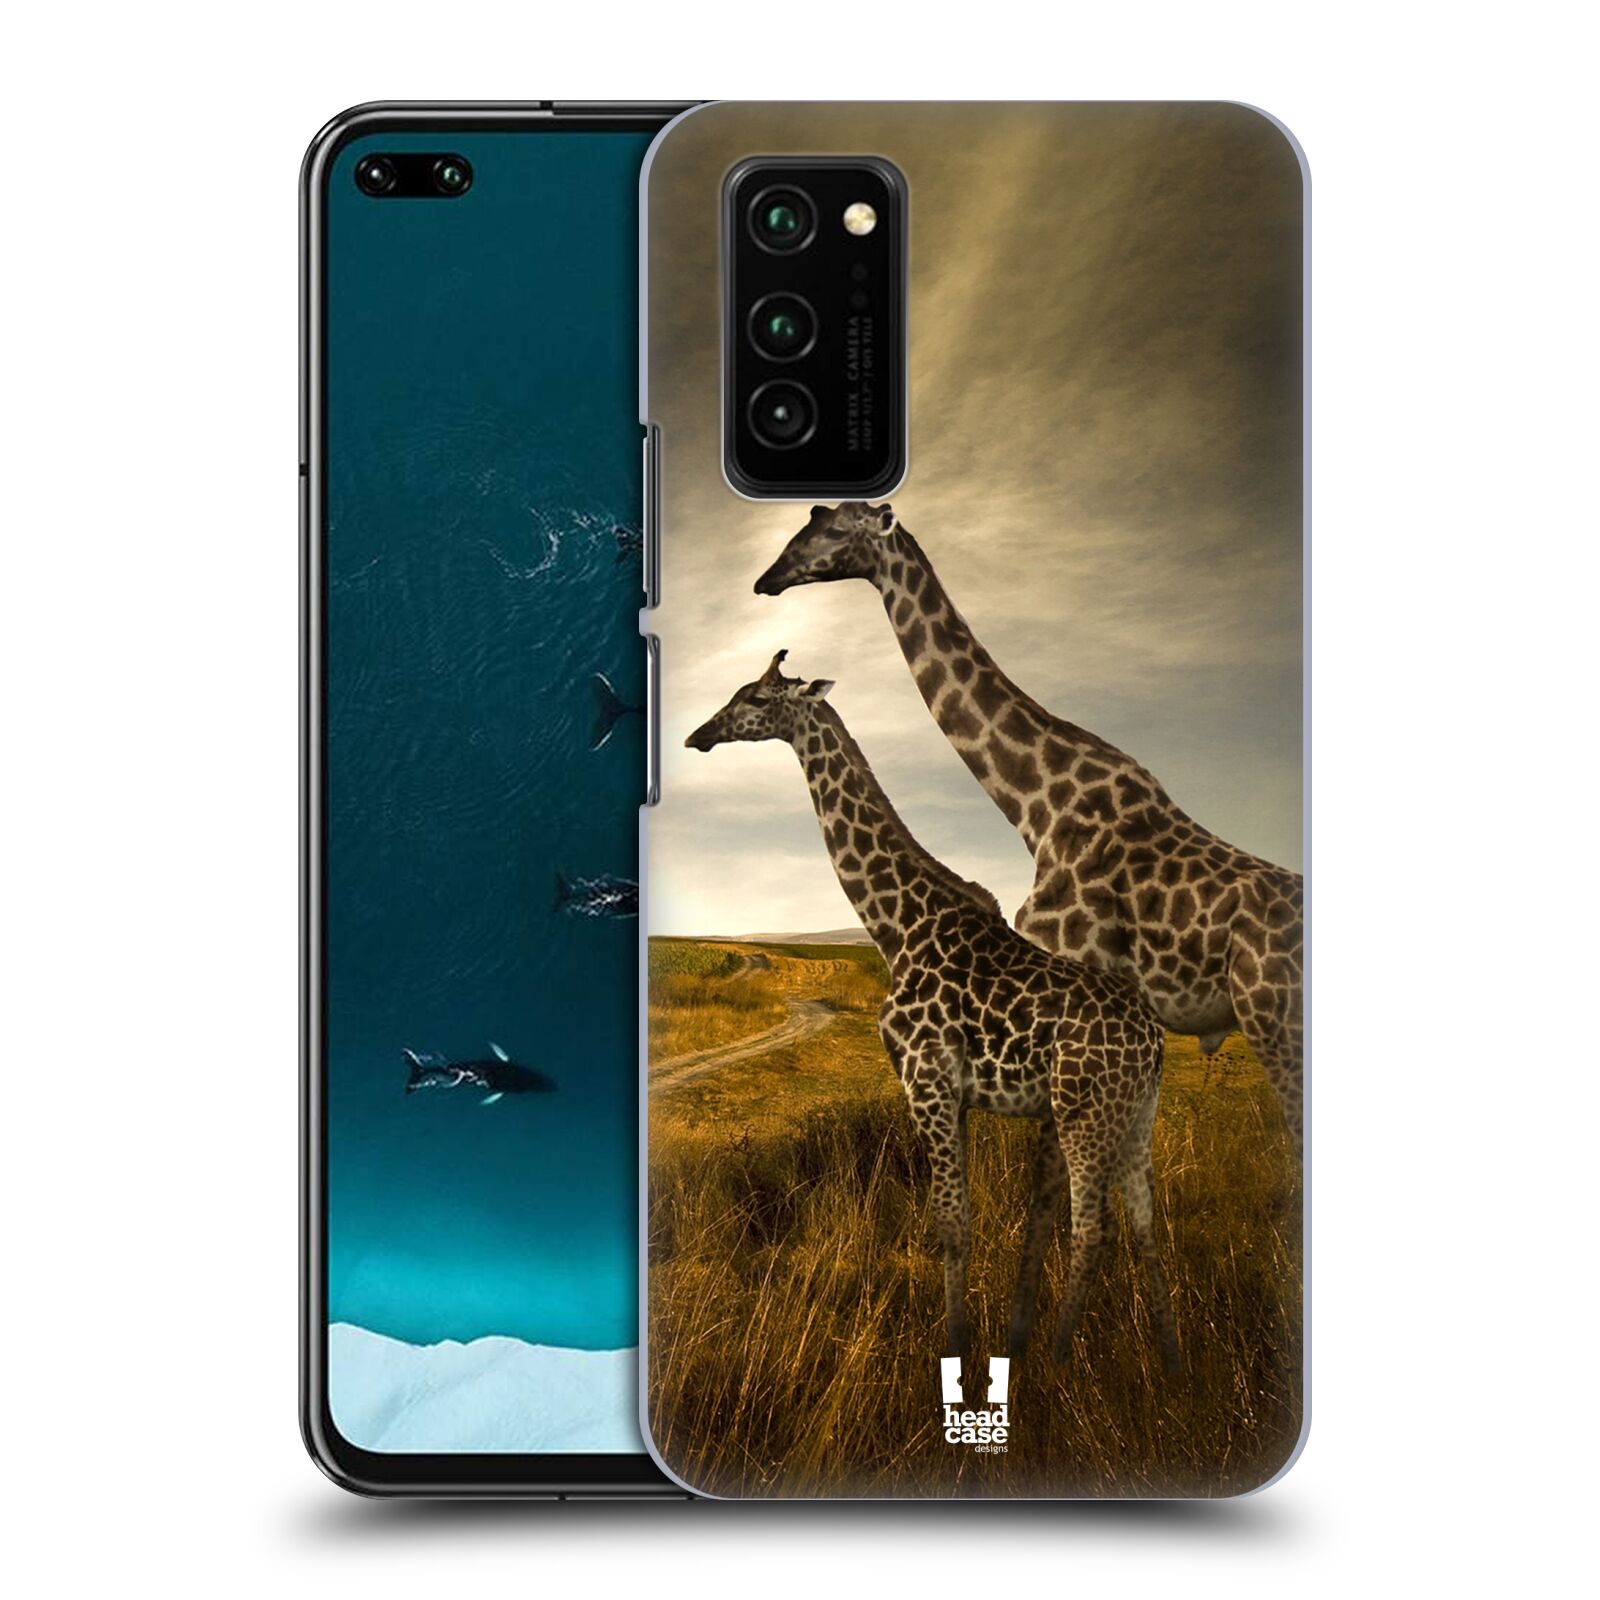 Zadní obal pro mobil Honor View 30 - HEAD CASE - Svět zvířat žirafy